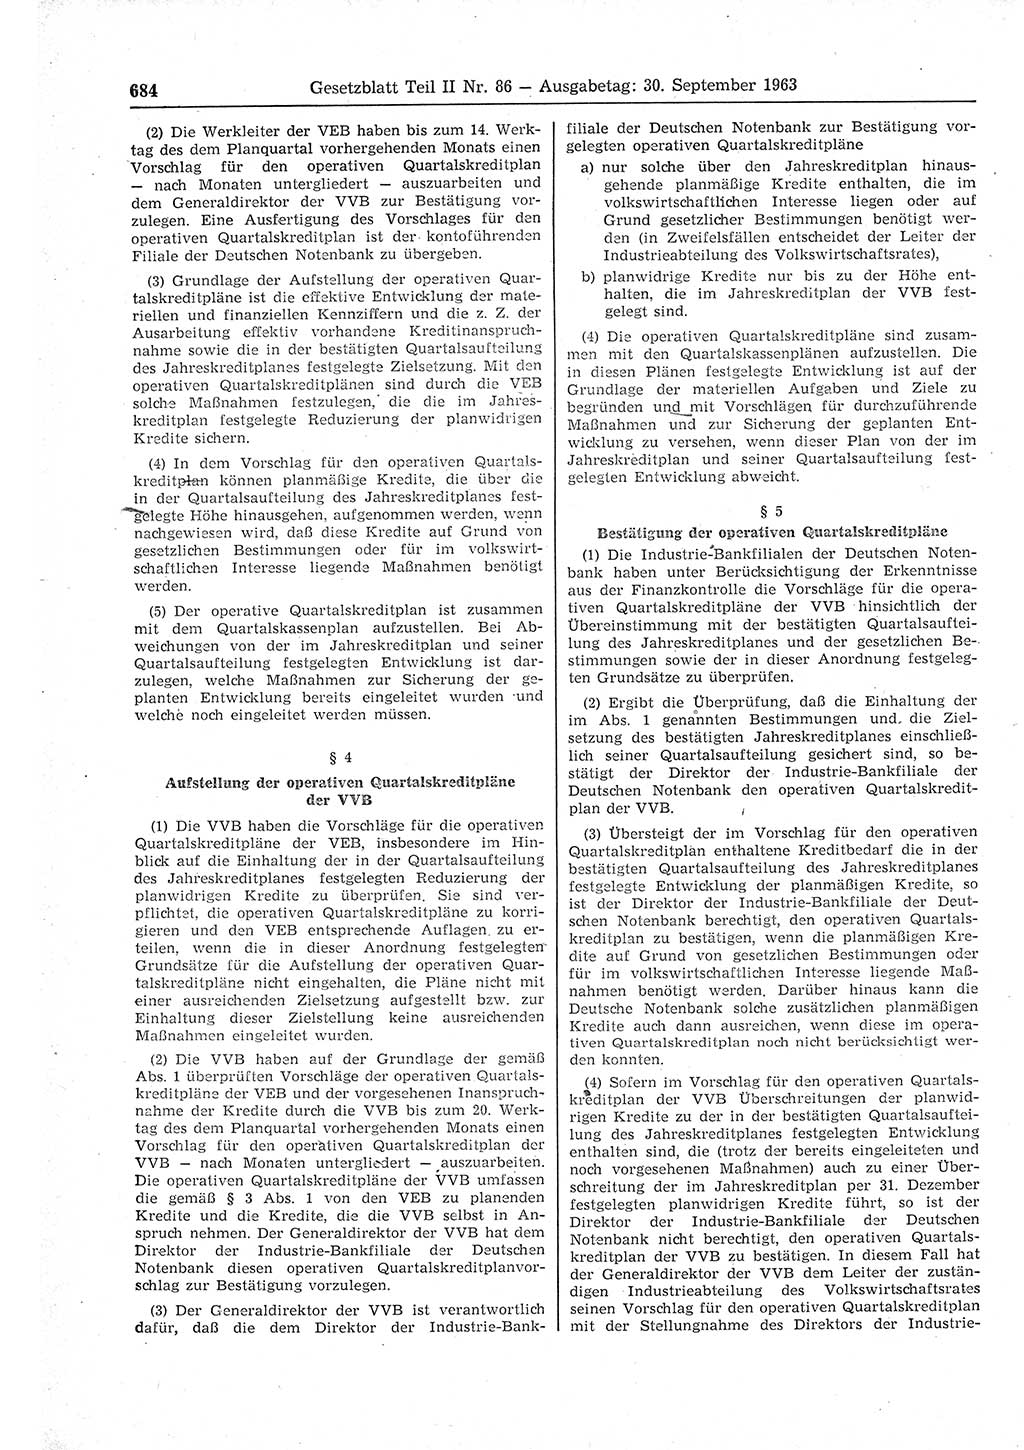 Gesetzblatt (GBl.) der Deutschen Demokratischen Republik (DDR) Teil ⅠⅠ 1963, Seite 684 (GBl. DDR ⅠⅠ 1963, S. 684)